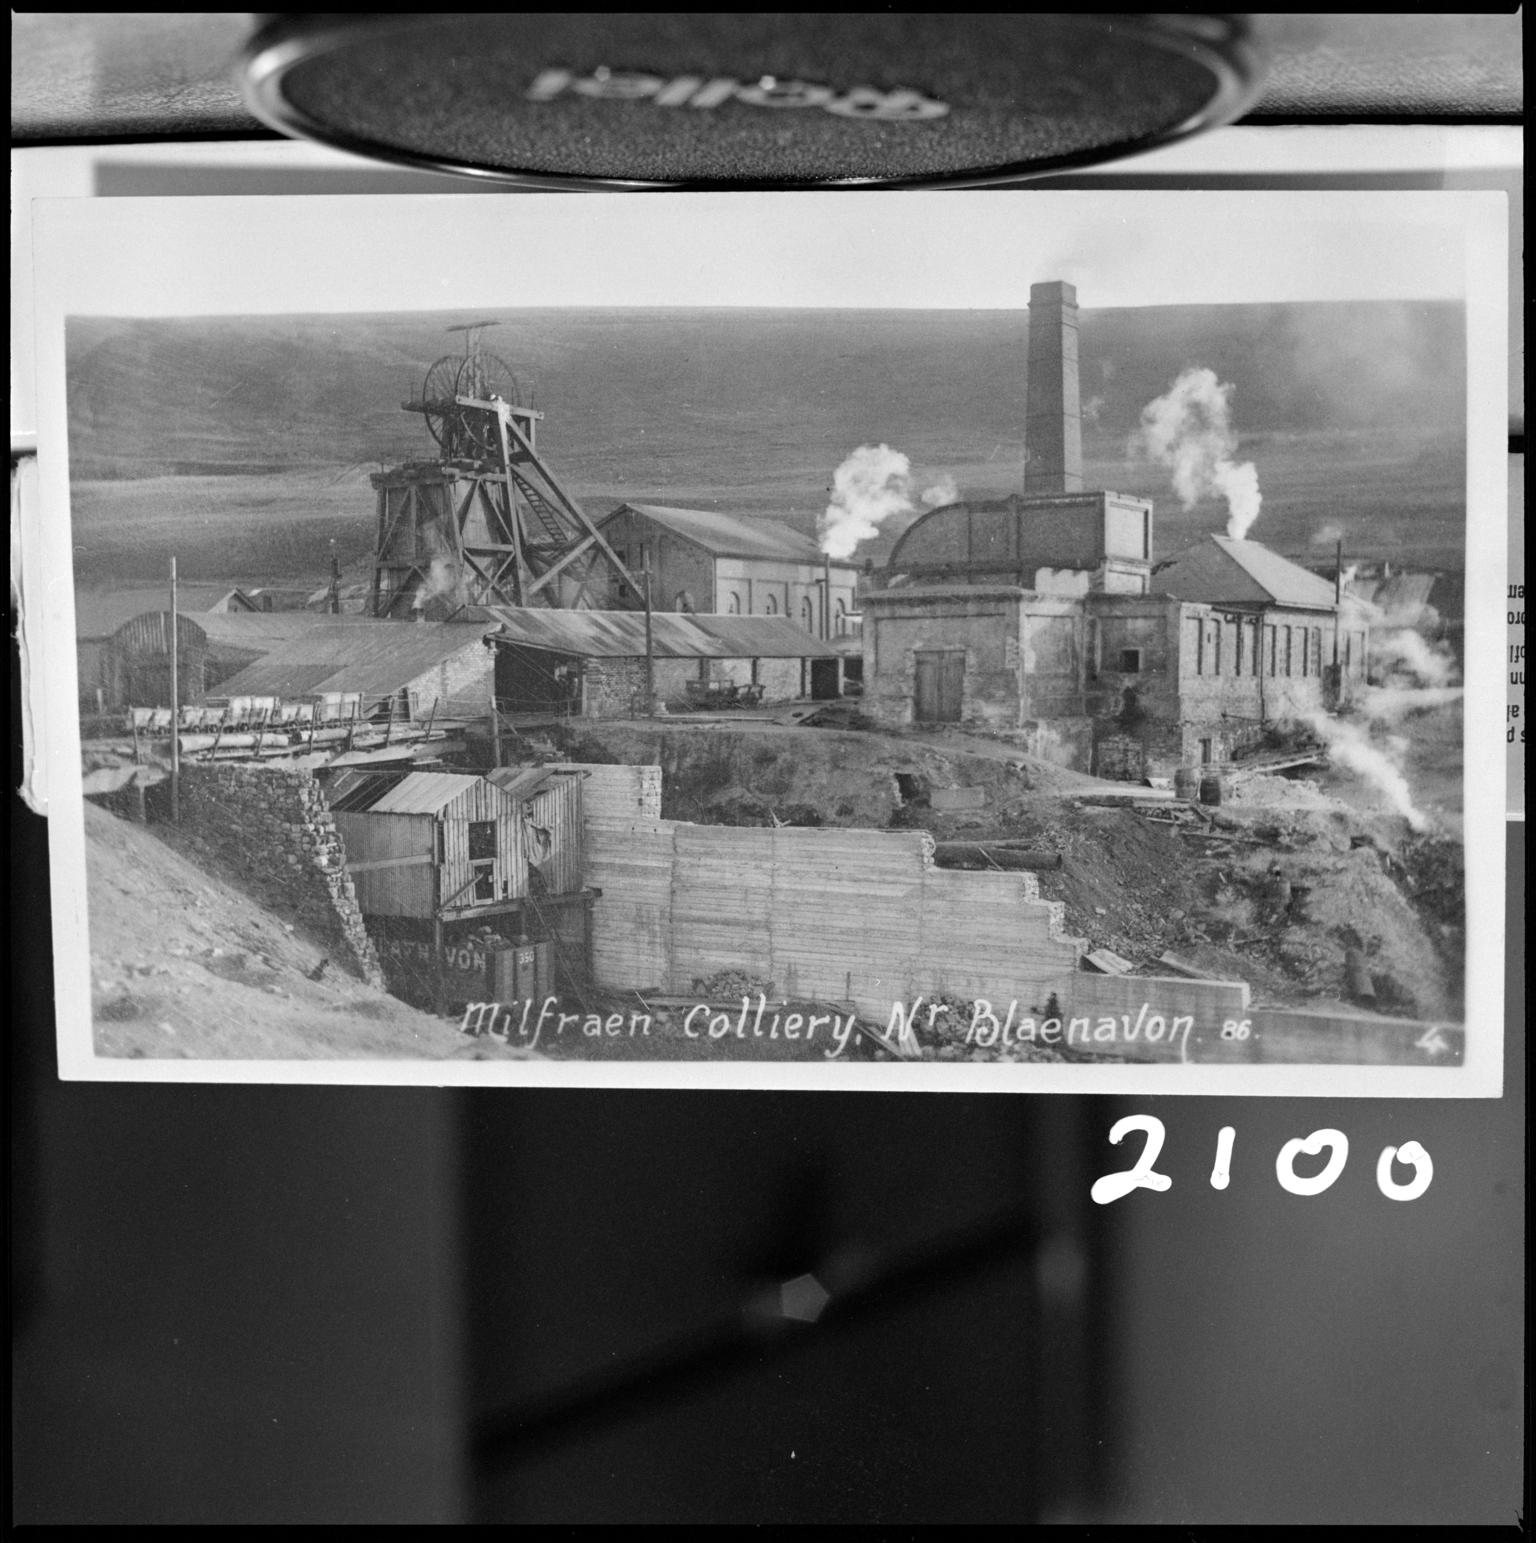 Milfraen Colliery, film negative